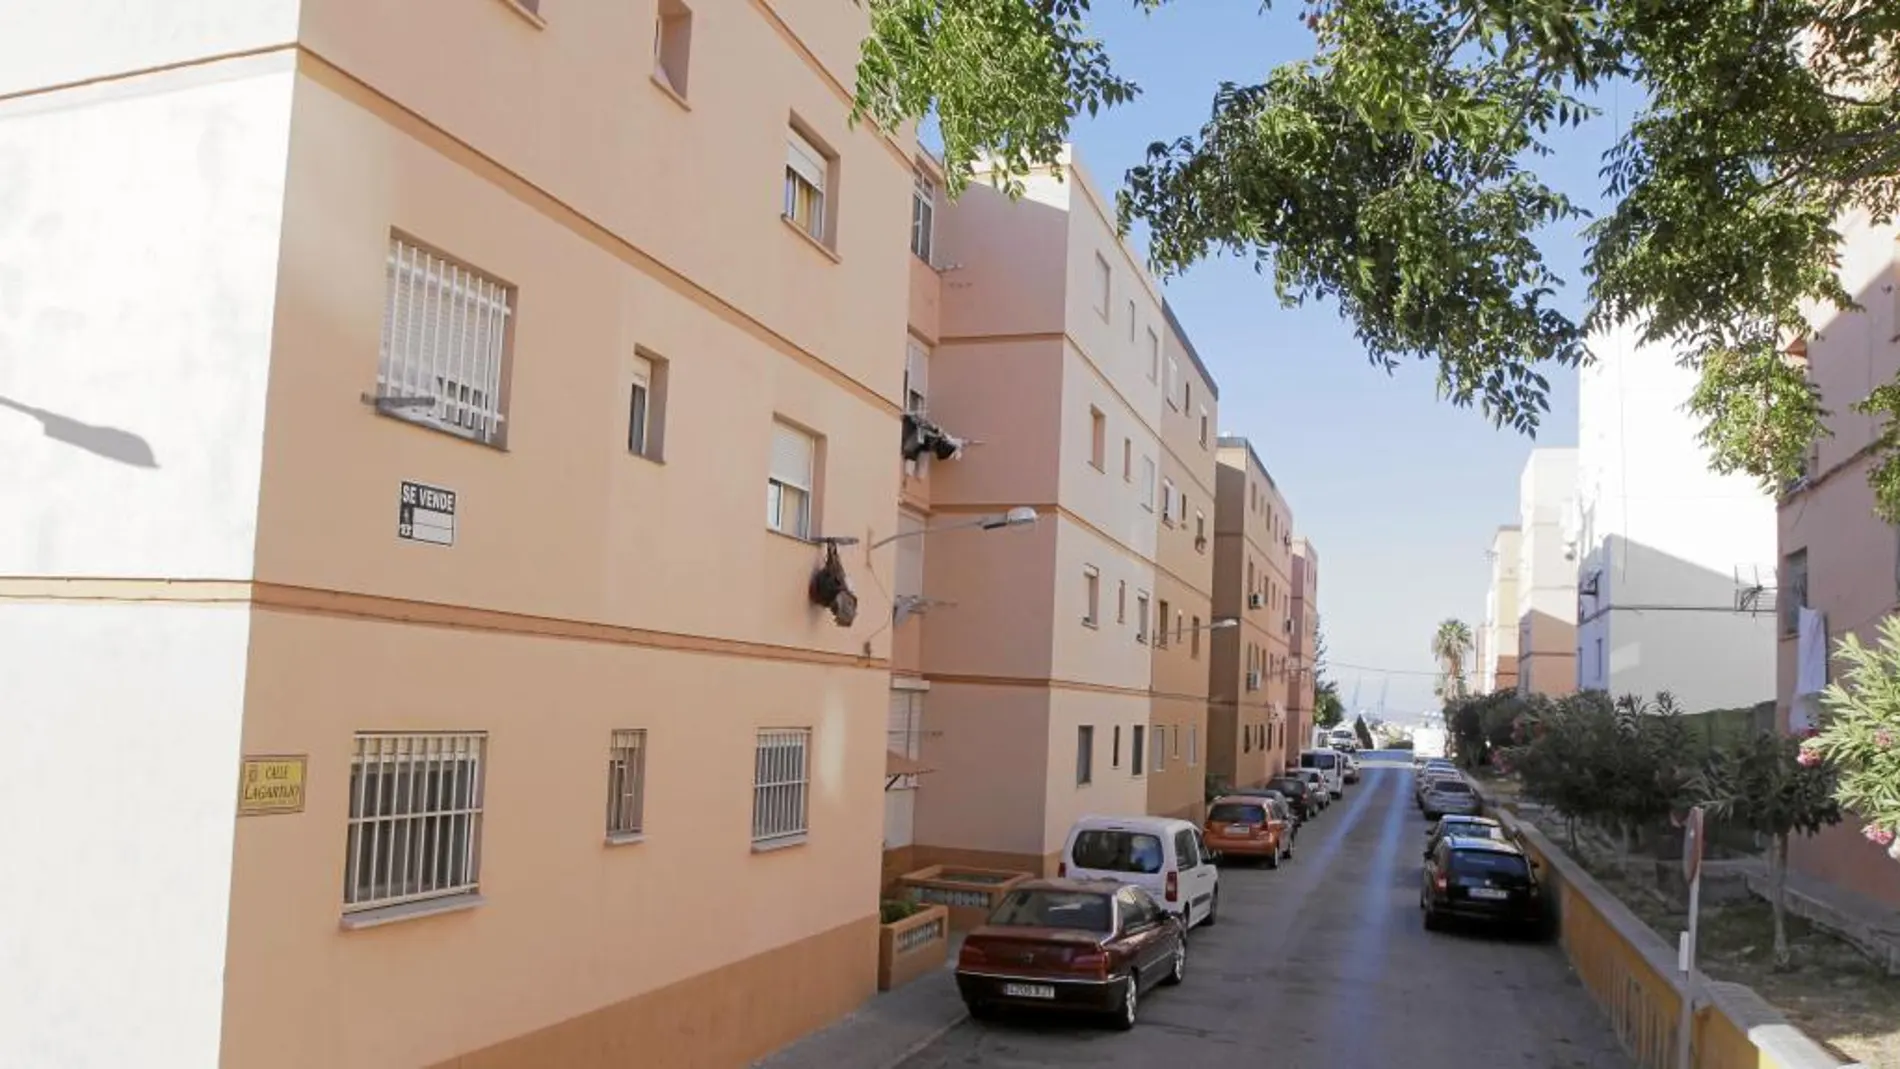 La fachada de la vivienda del terrorista Ayoub el Khazzani en la barriada de El Saladillo, en Algeciras